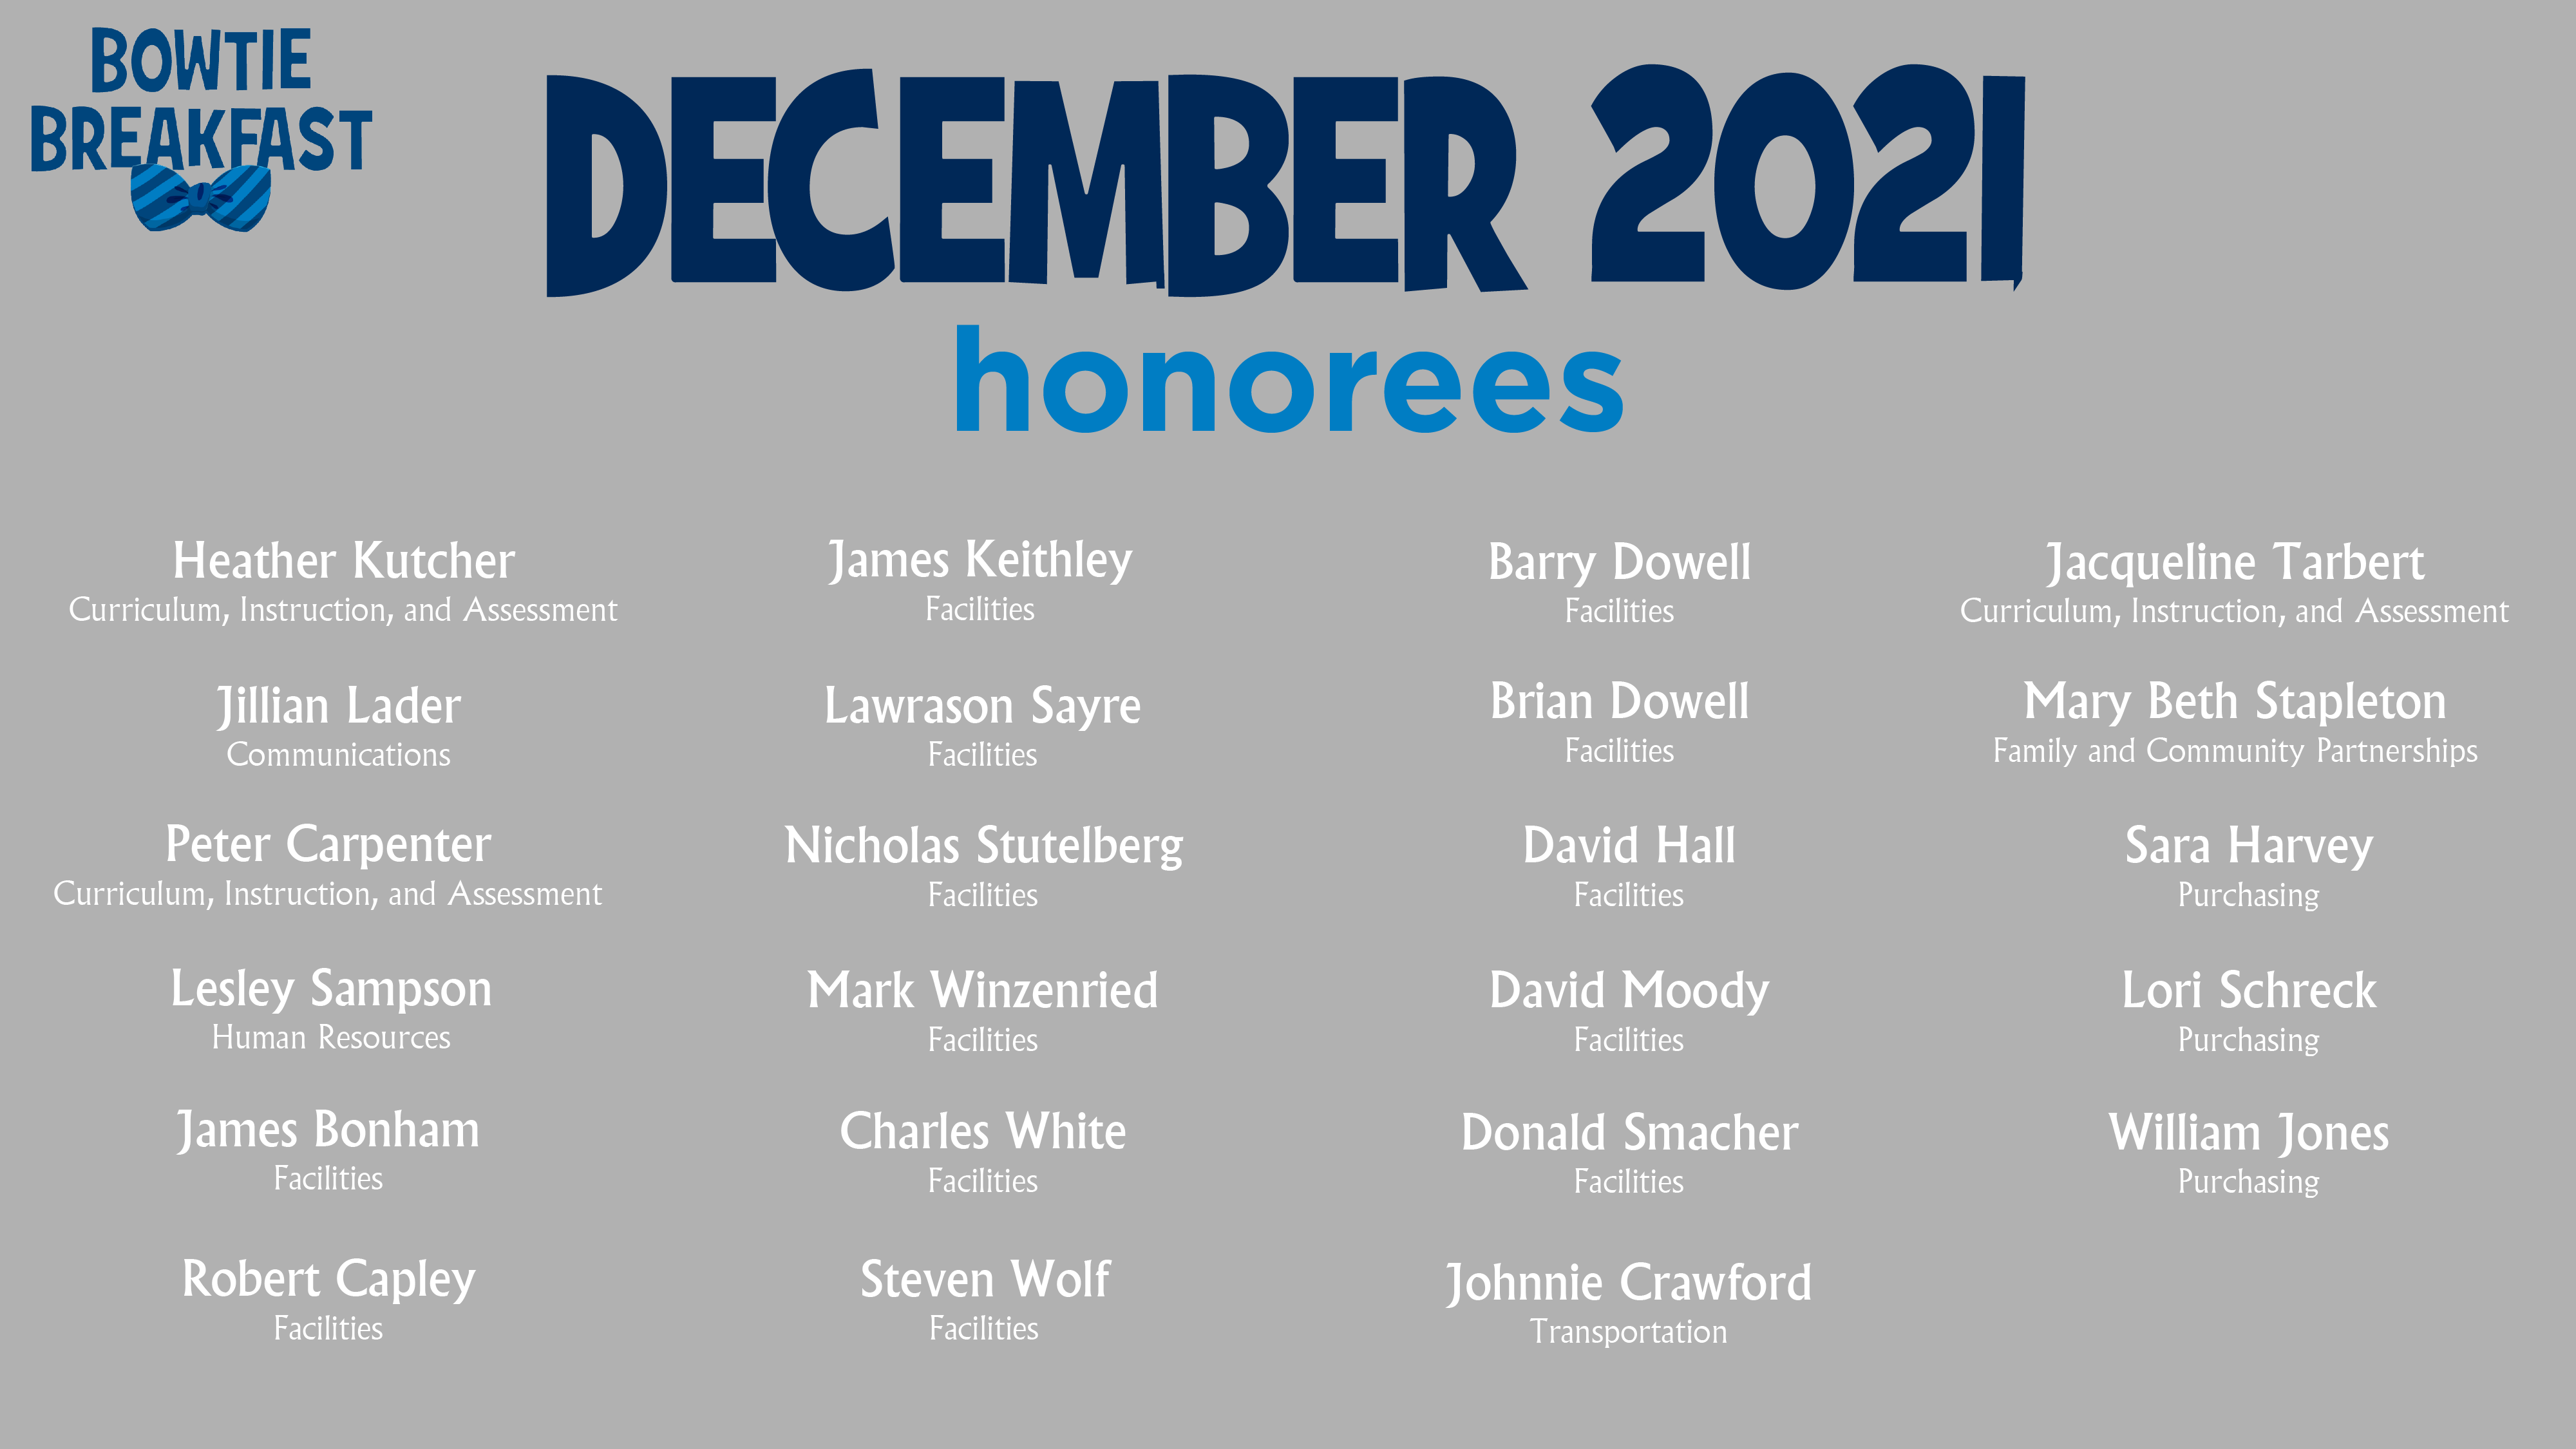 HCPS Bowtie Breakfast Honorees - December 2021